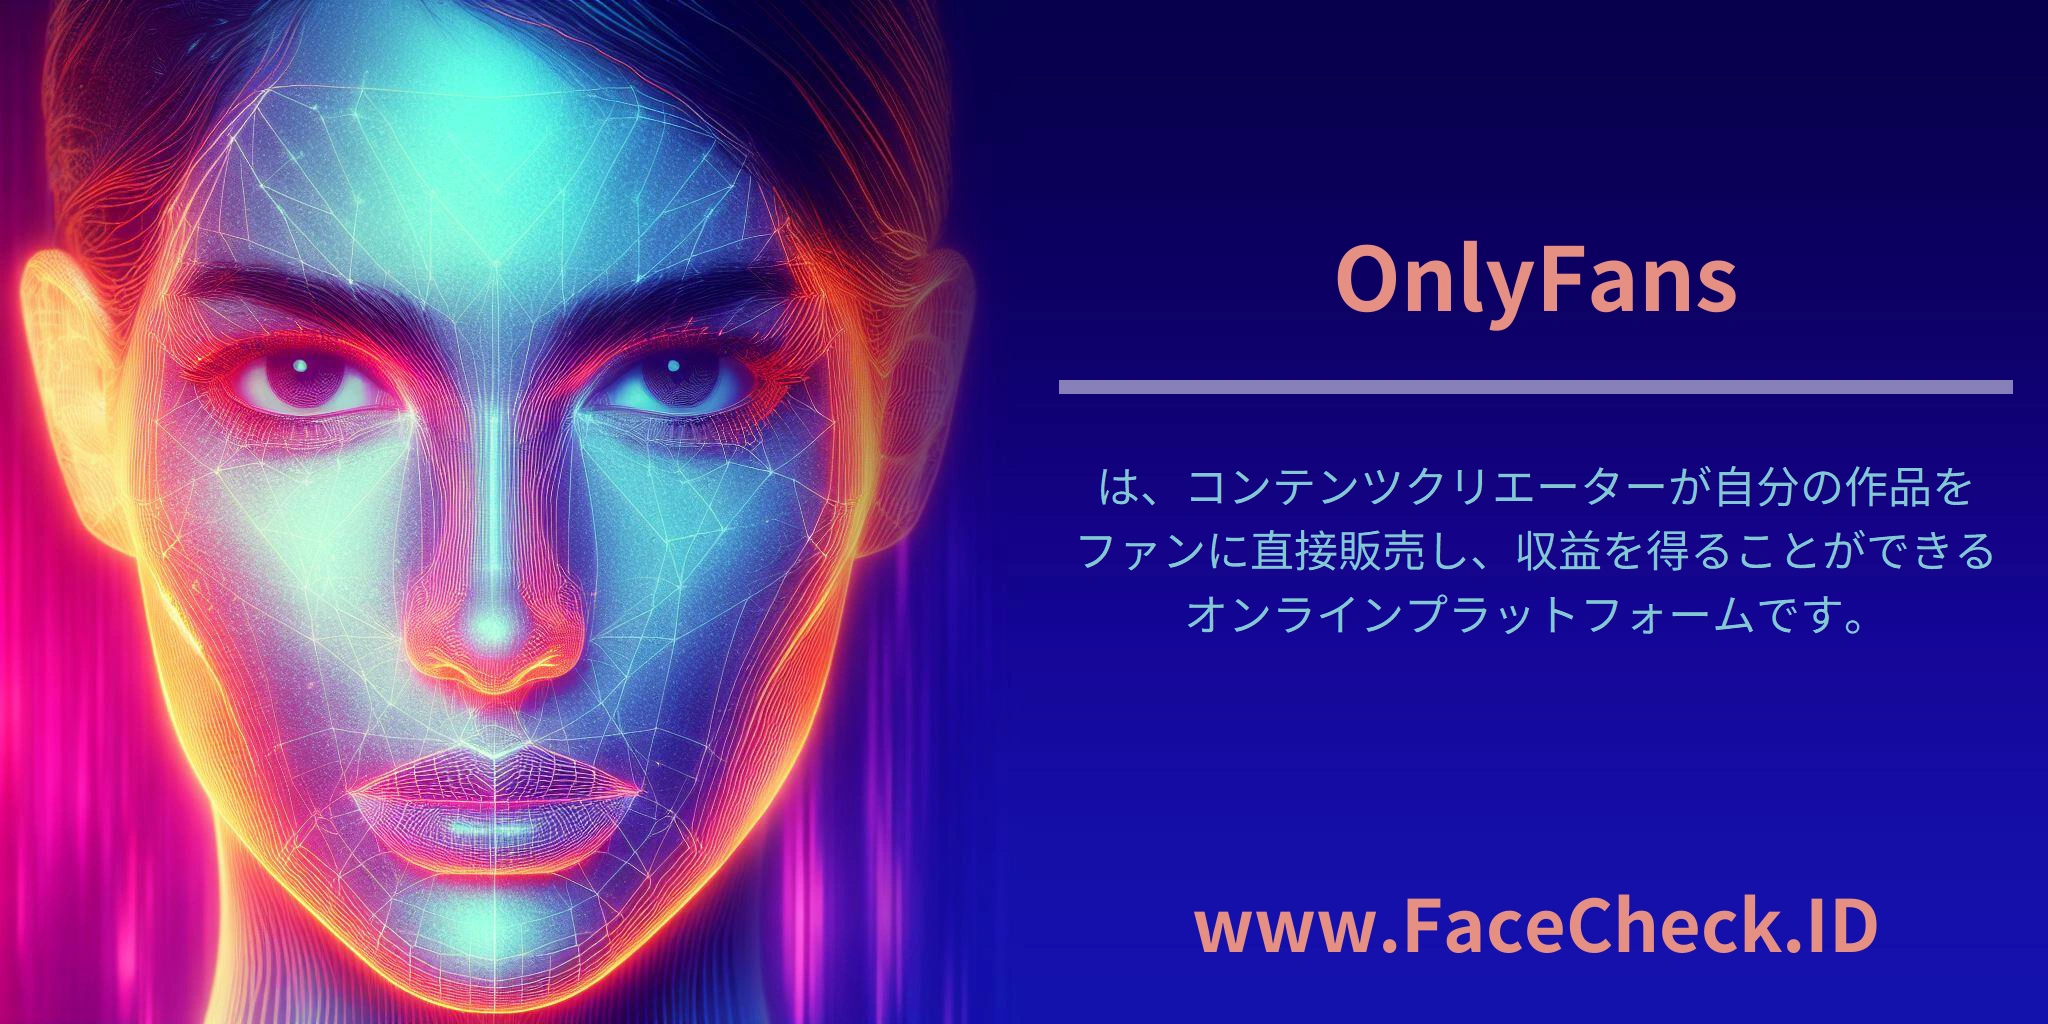 <b>OnlyFans</b>は、コンテンツクリエーターが自分の作品をファンに直接販売し、収益を得ることができるオンラインプラットフォームです。